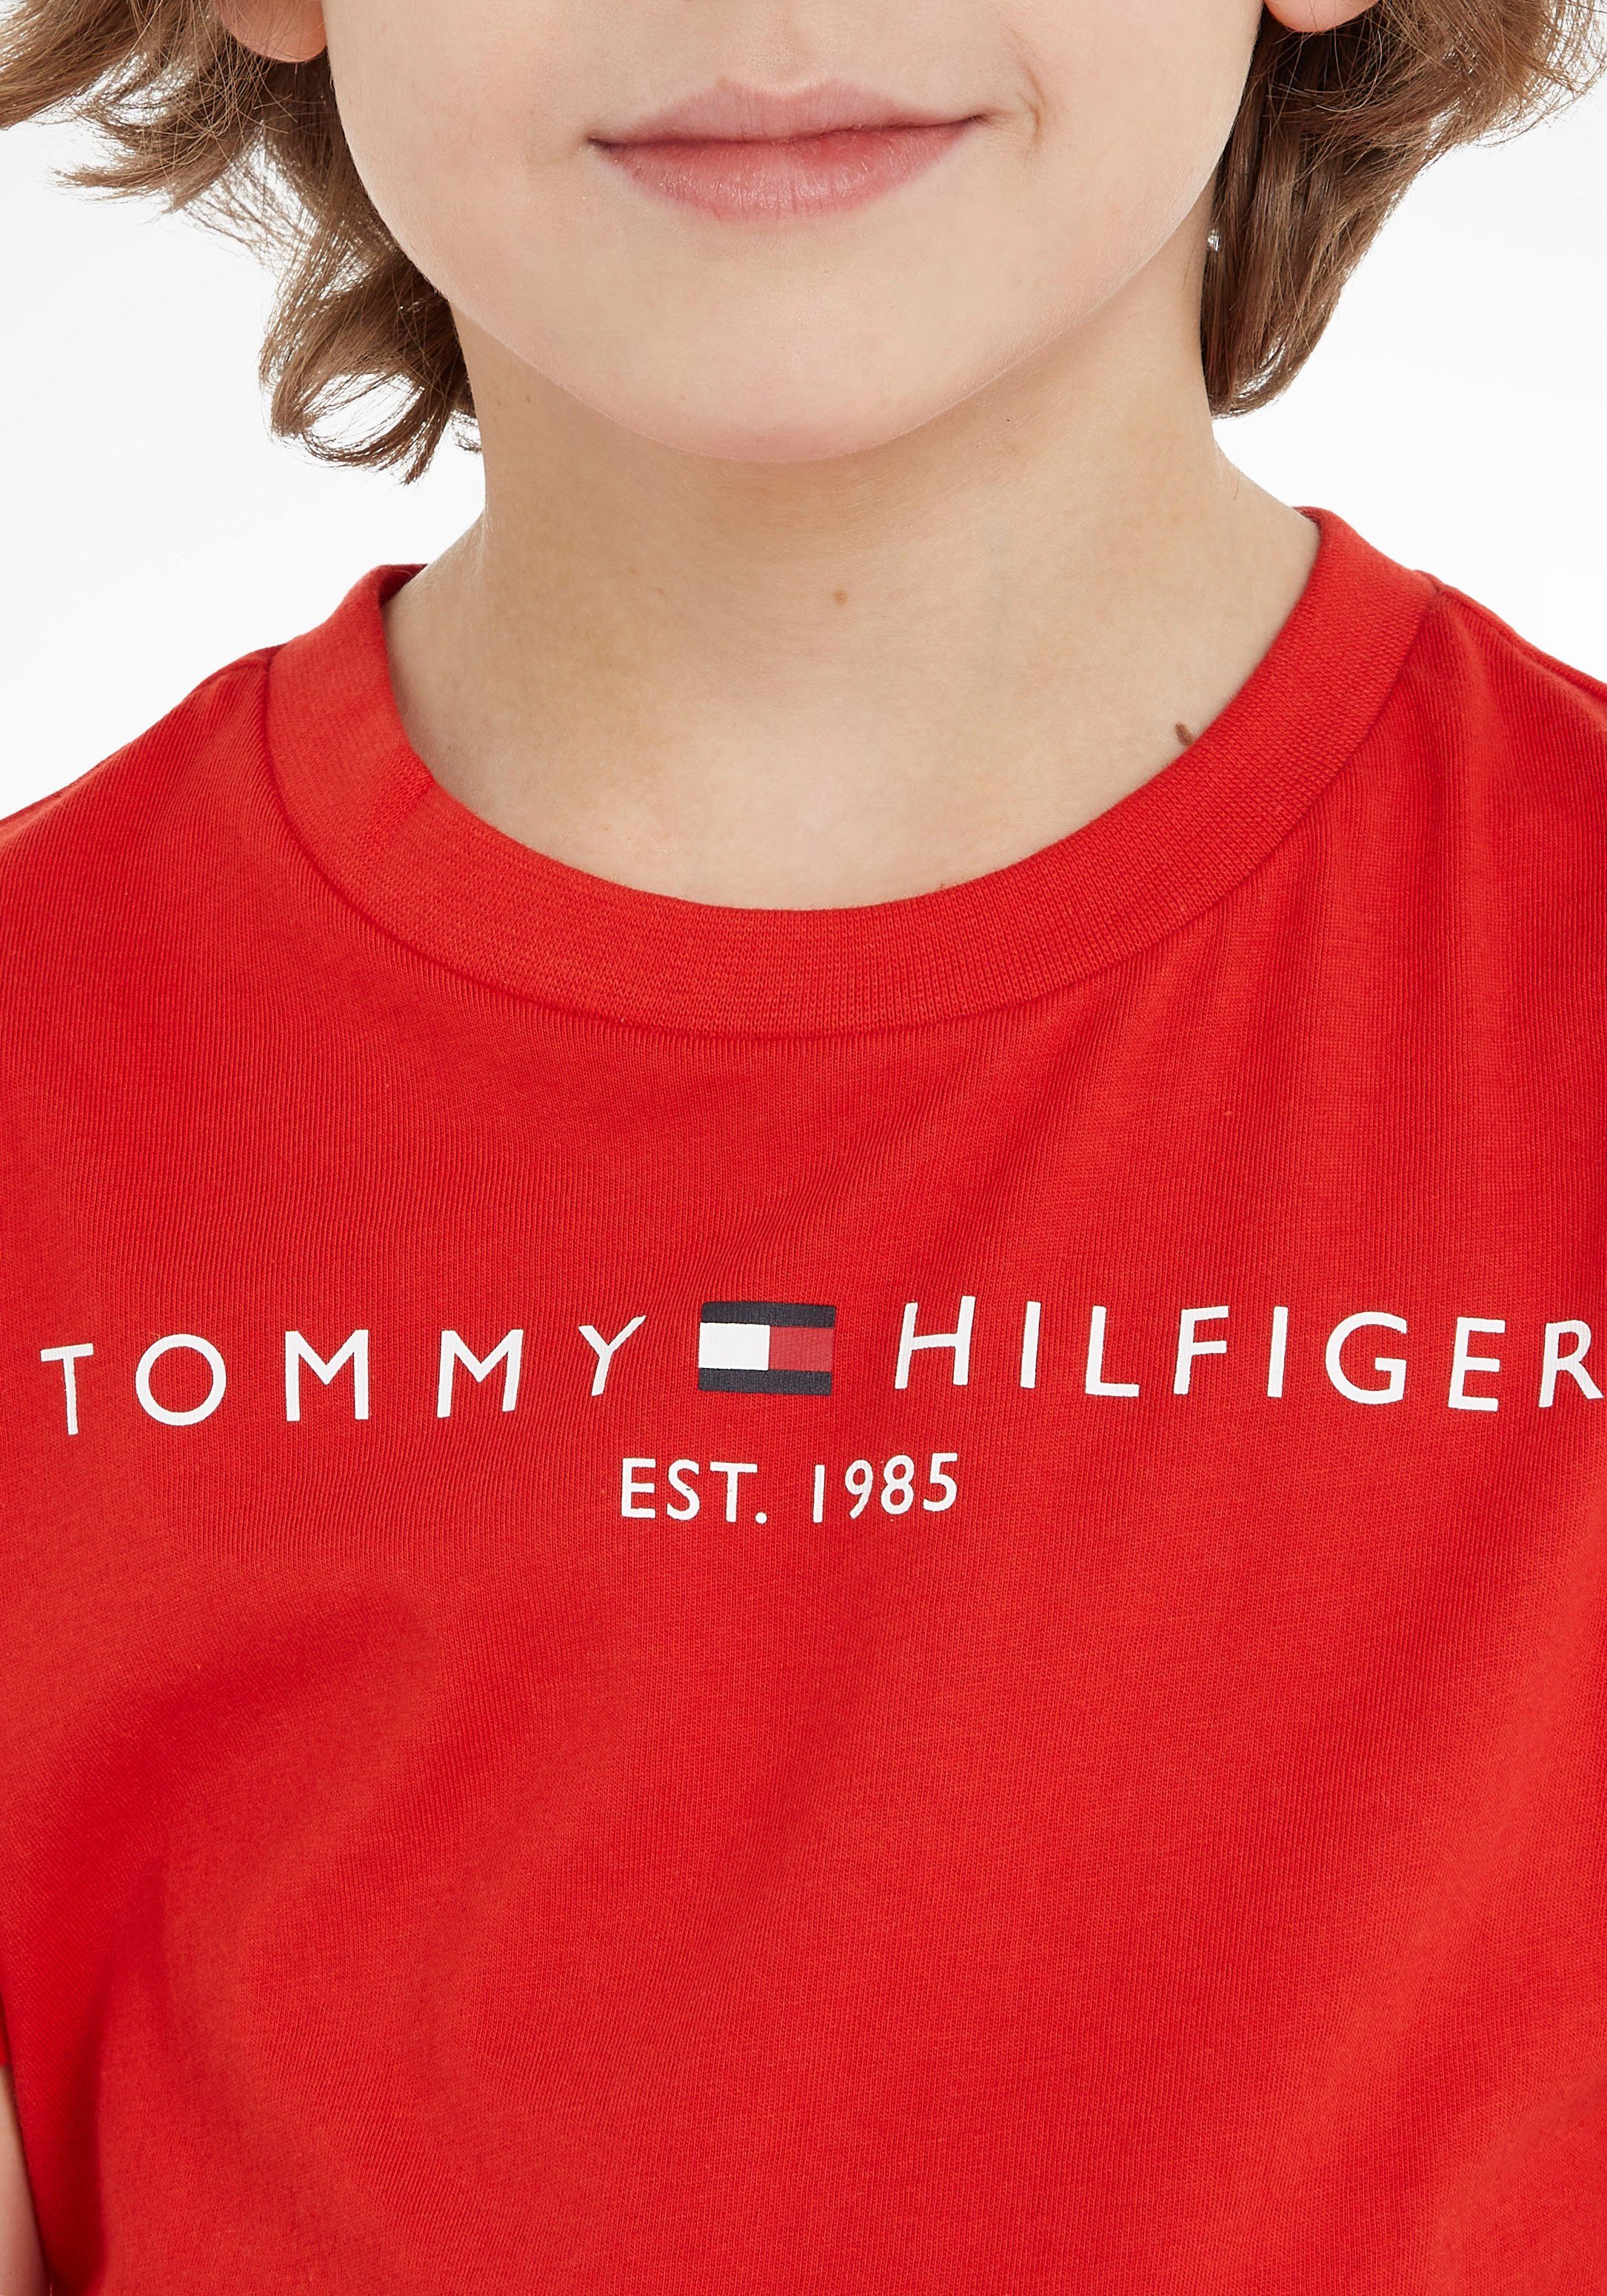 Tommy Hilfiger T-Shirt TEE ESSENTIAL Jungen für Mädchen und